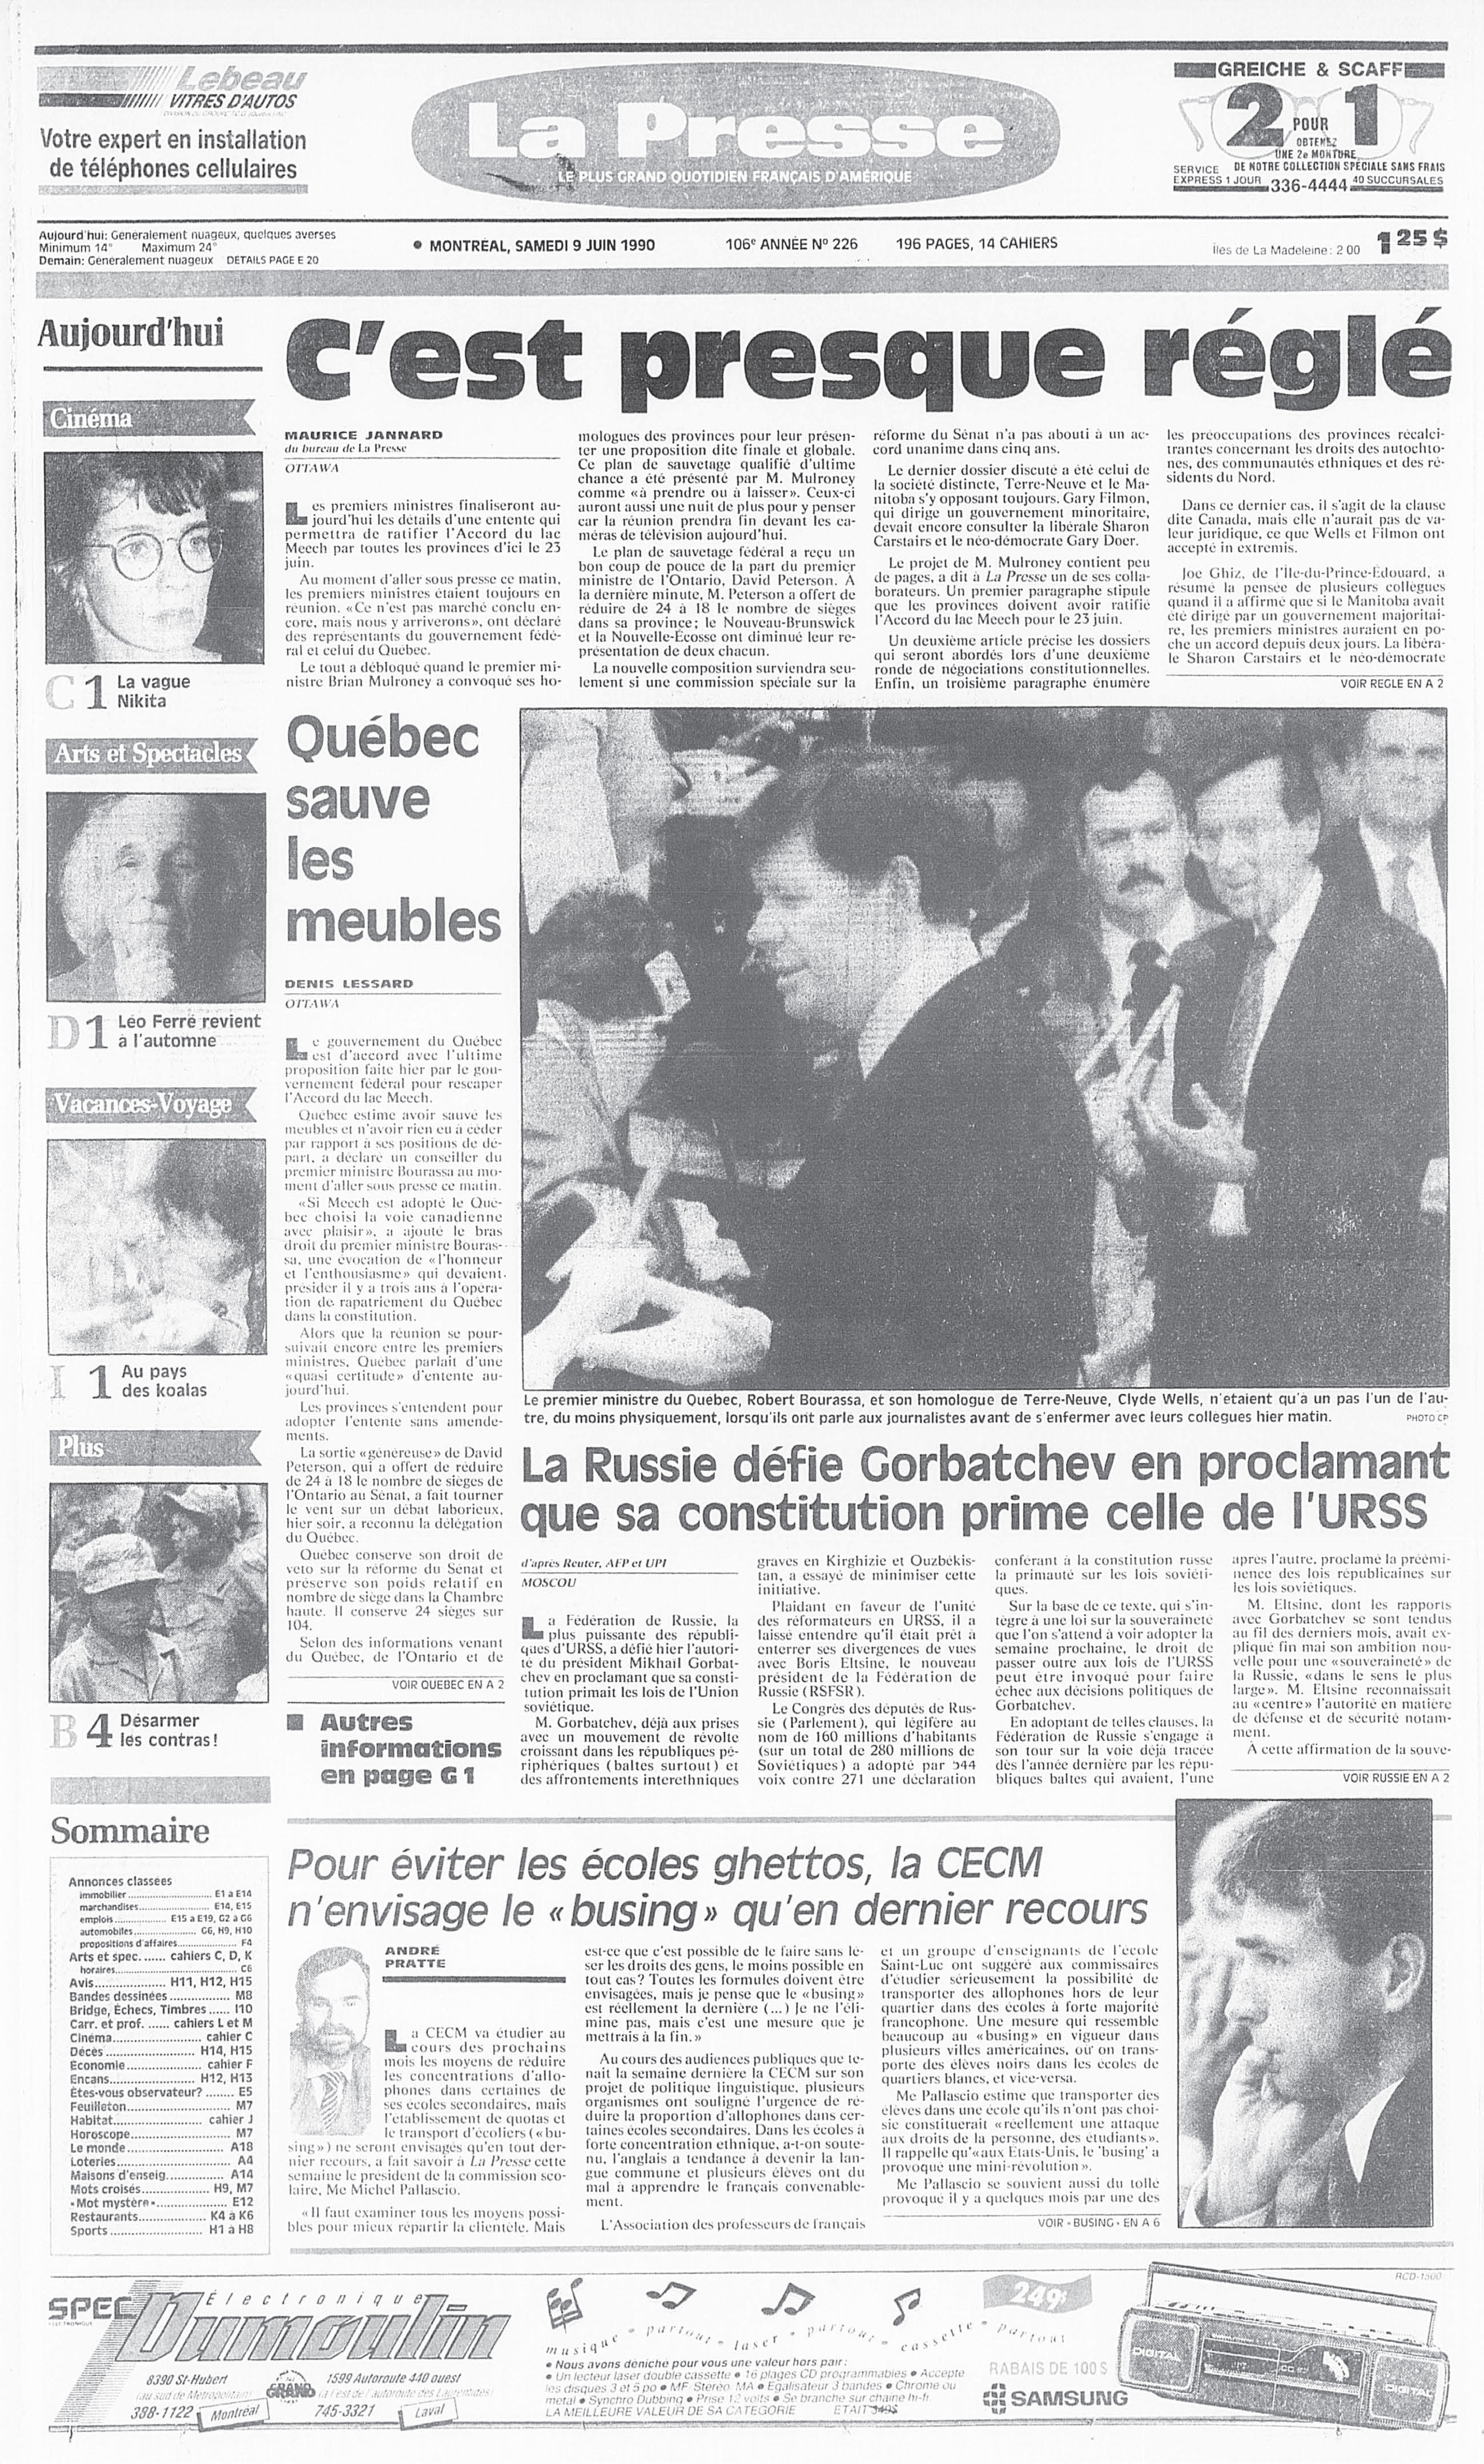 Léo Ferré - La Presse, 9 juin 1990, Cahier A